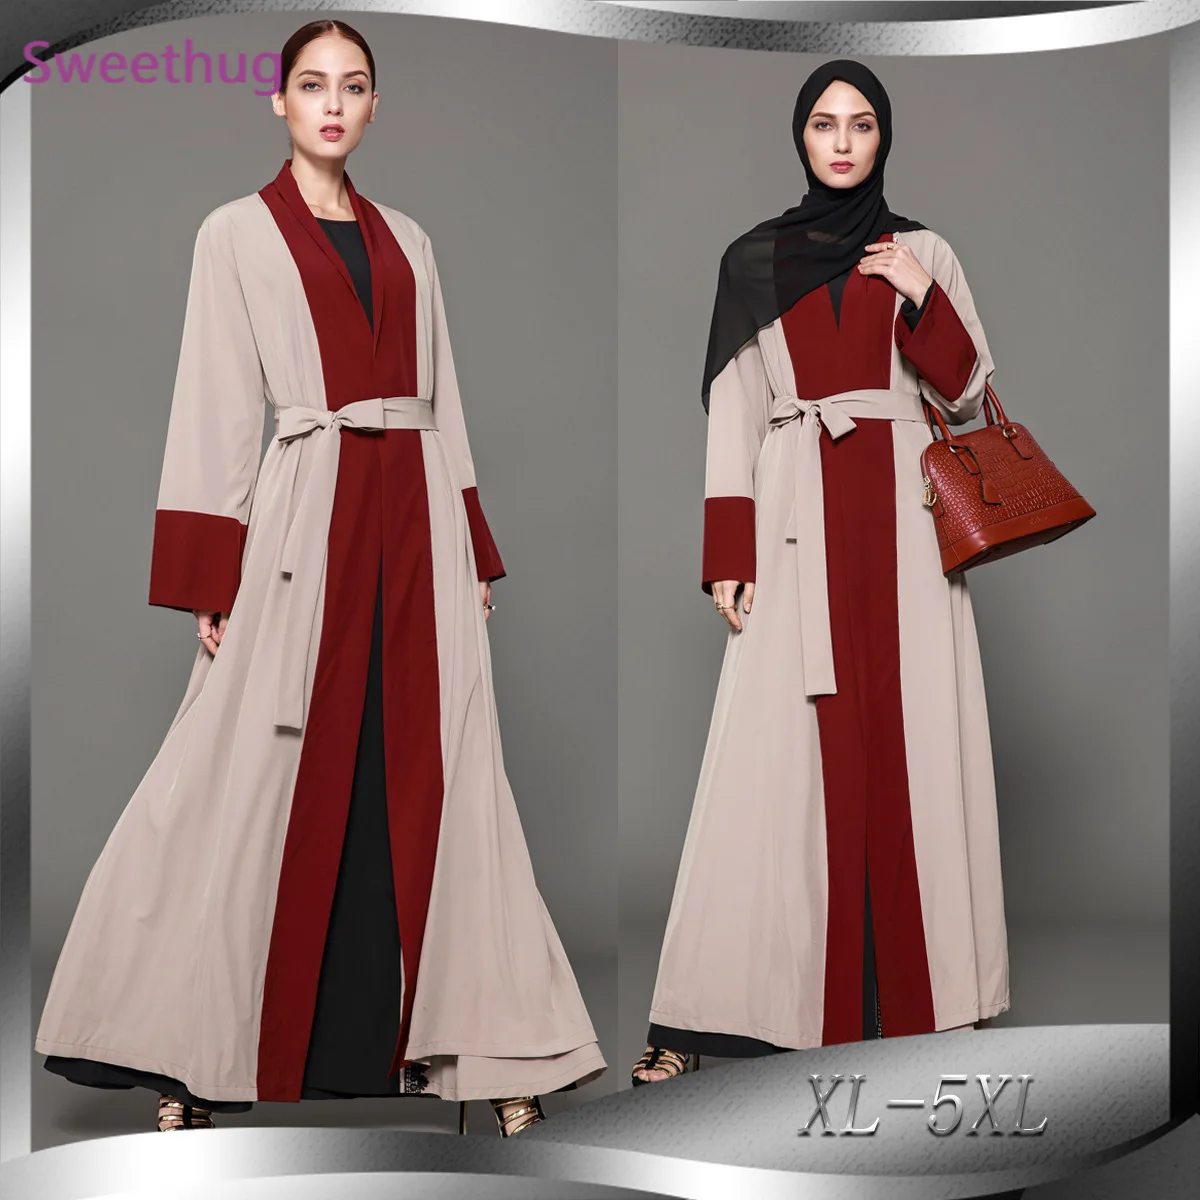 "2021 XL-5XL элегантное скромное мусульманское длинное Открытое платье с длинным рукавом Абая для женщин с поясом размера плюс"